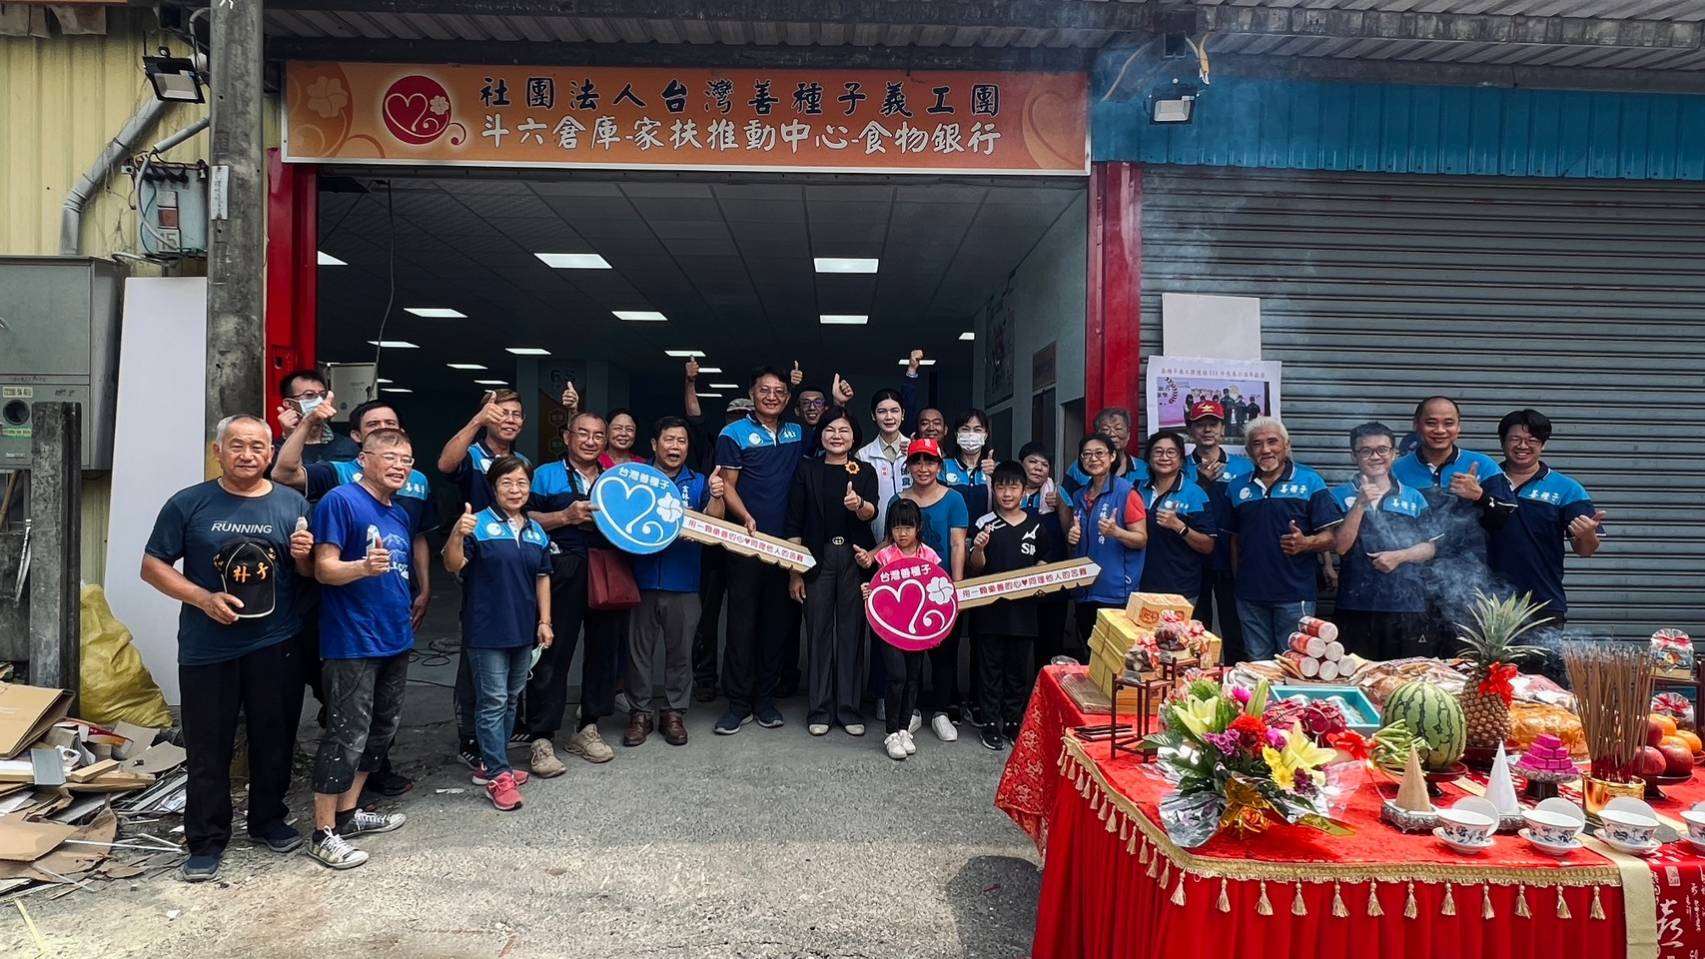 台灣善種子義工團斗六倉庫及家扶推展中心的設立讓雲林縣社會安全網更強韌。